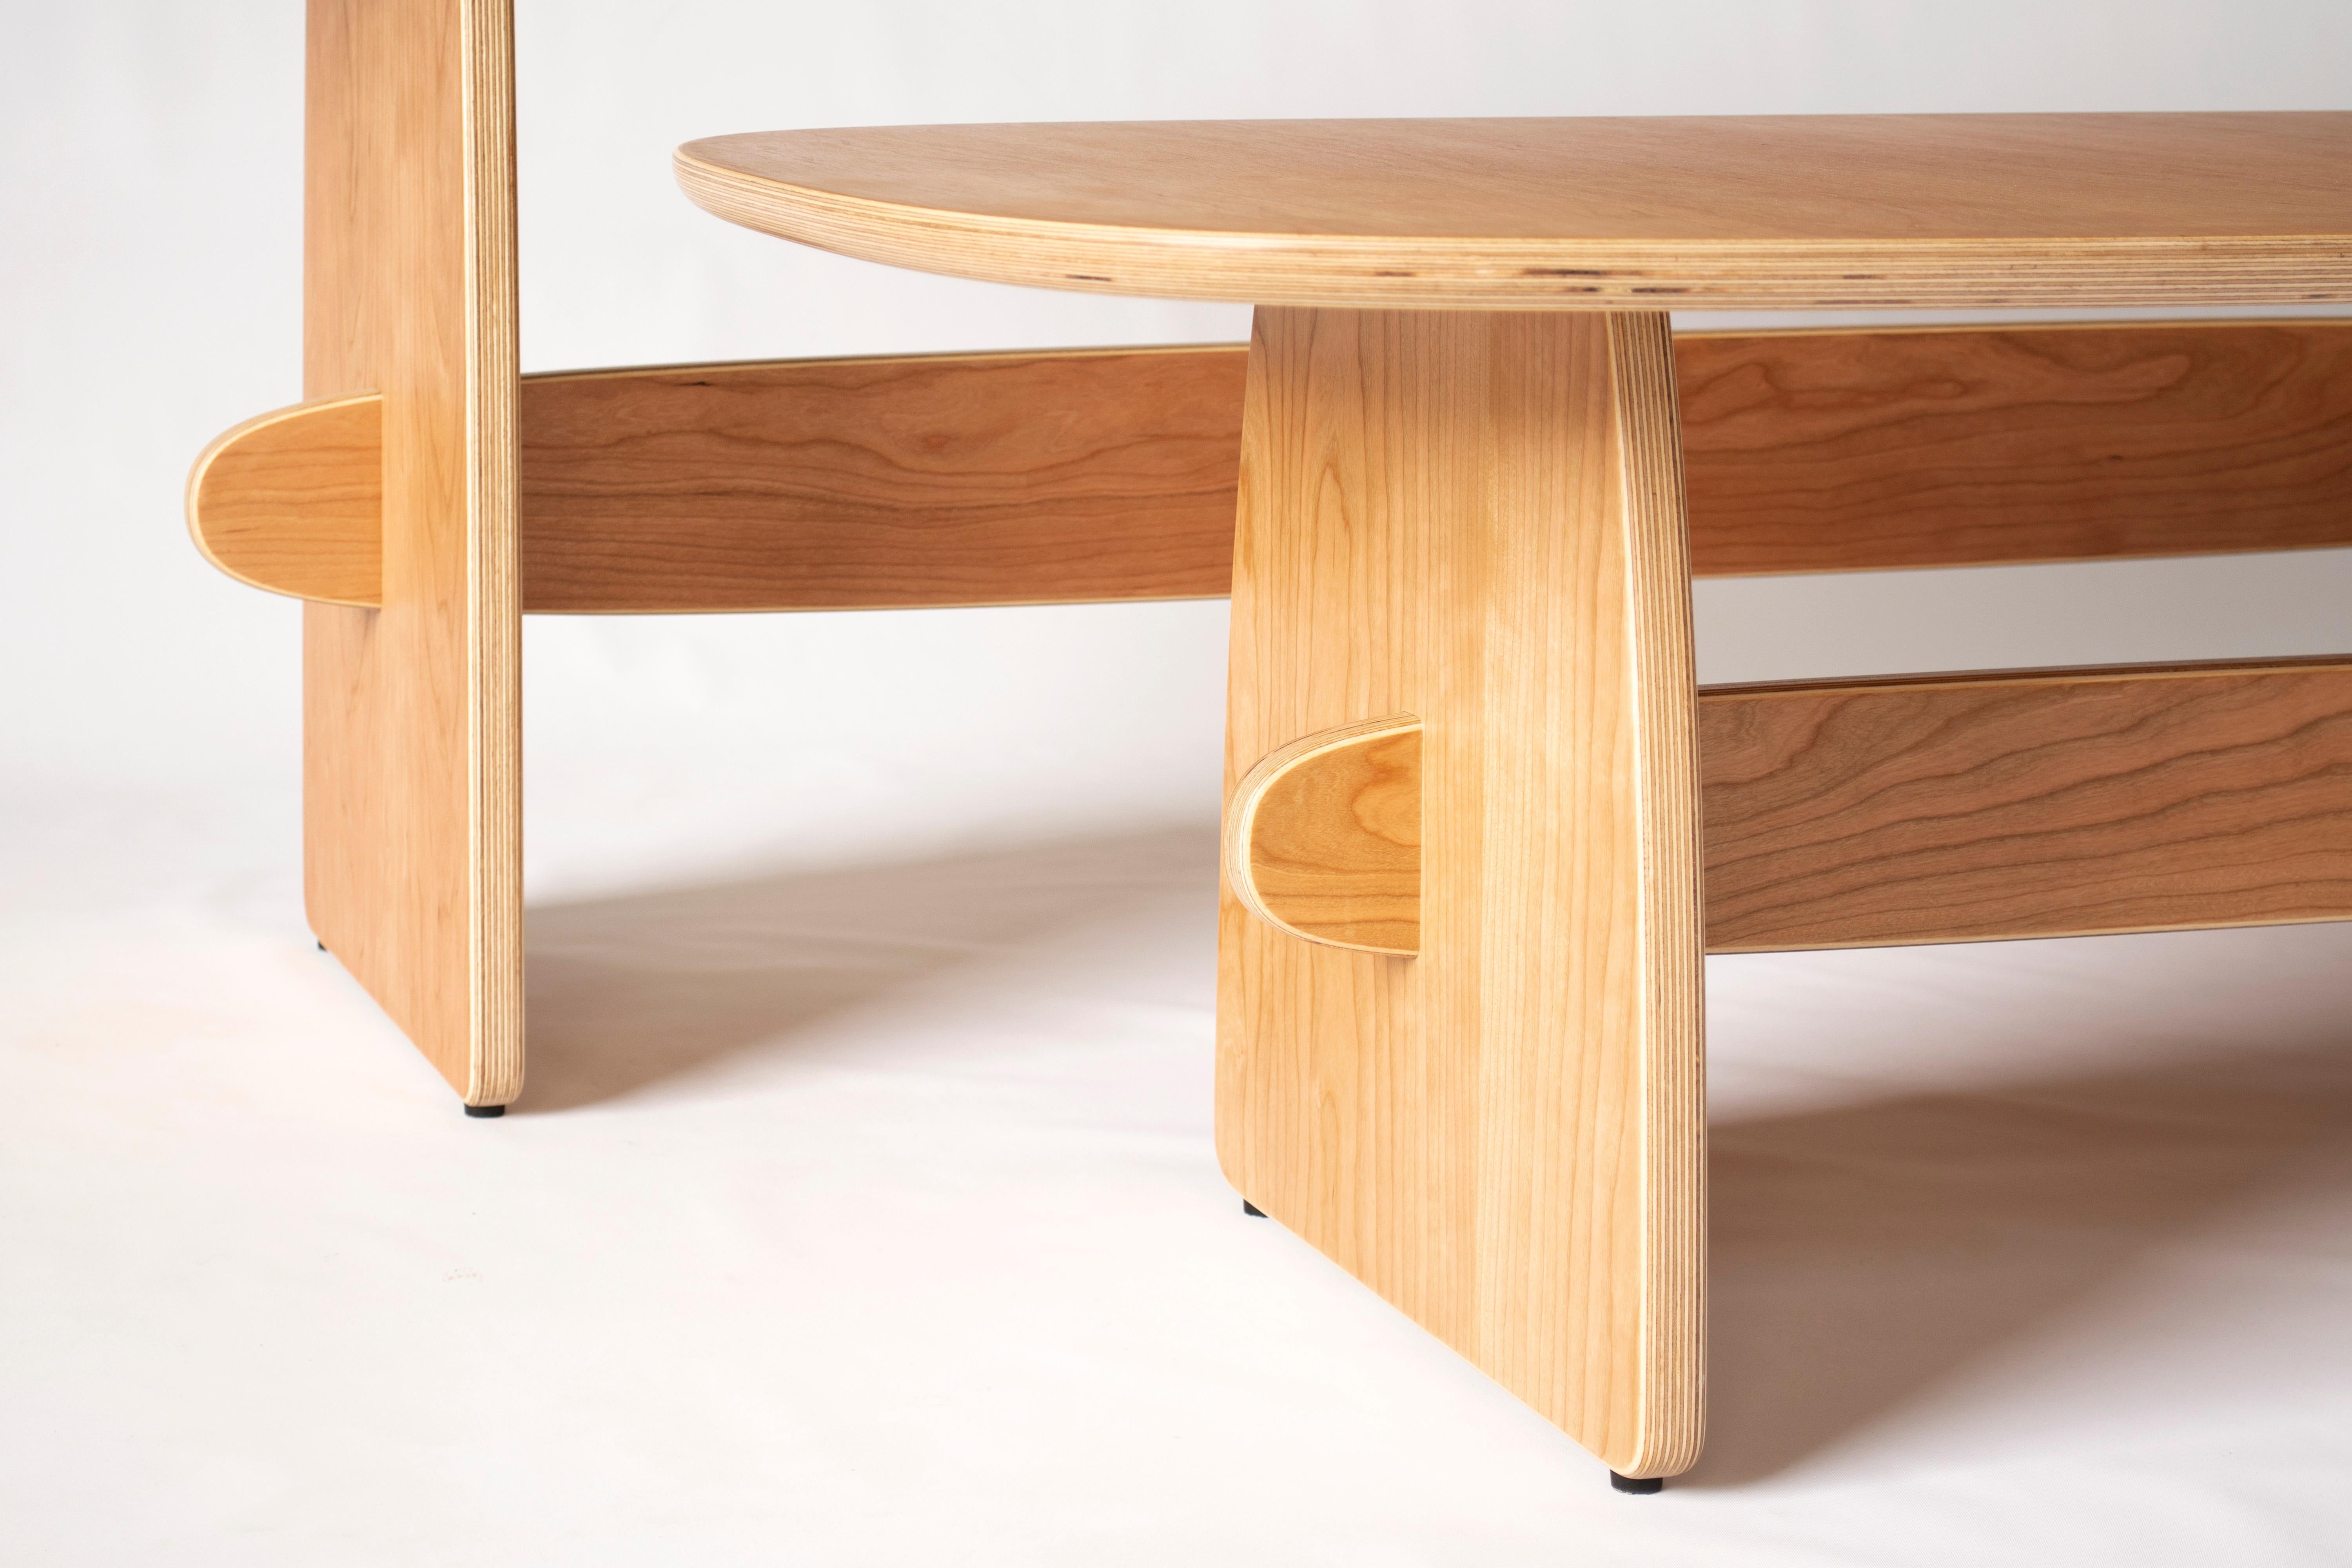 Woodbine coffee table in cherry veneer hardwood plywood by KLN Studio For Sale 1